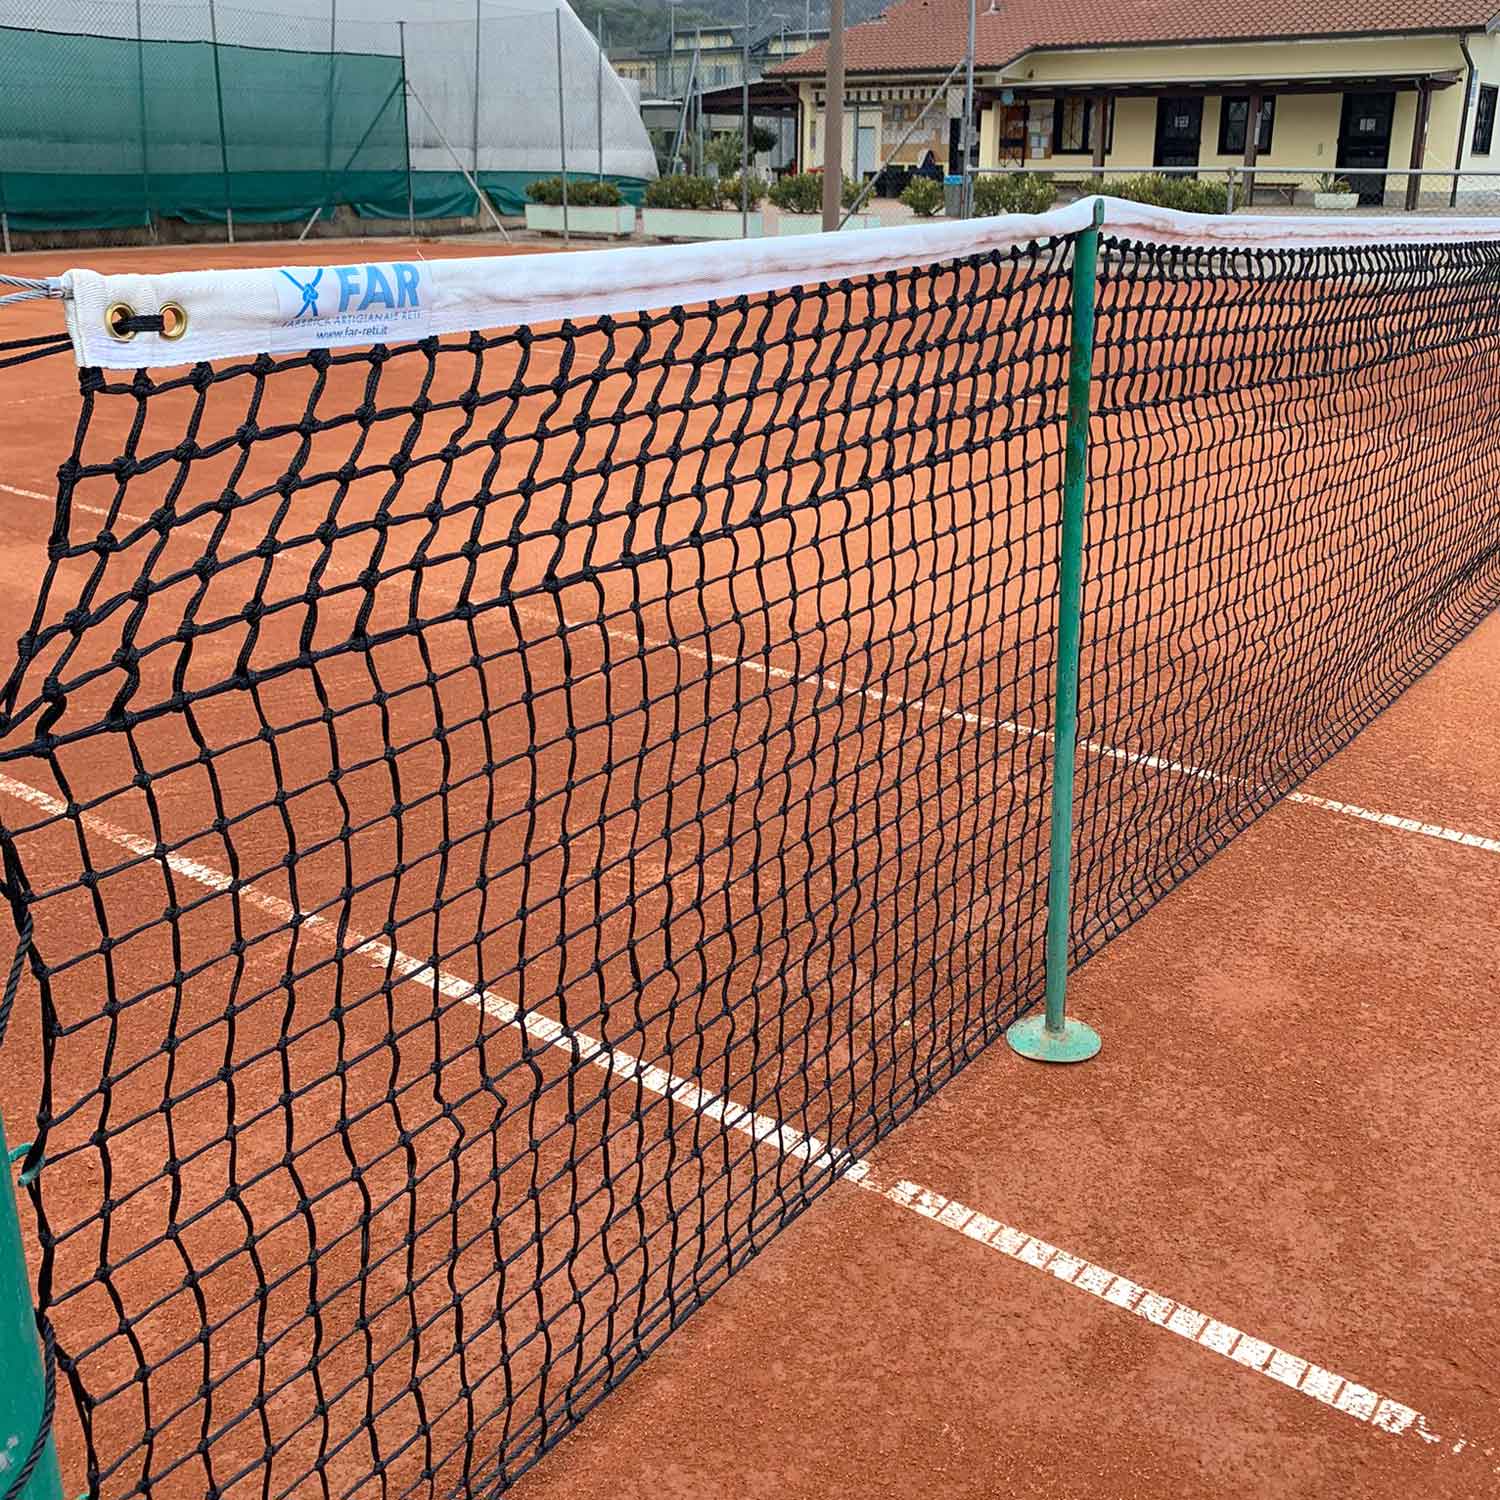 Tennisnetze